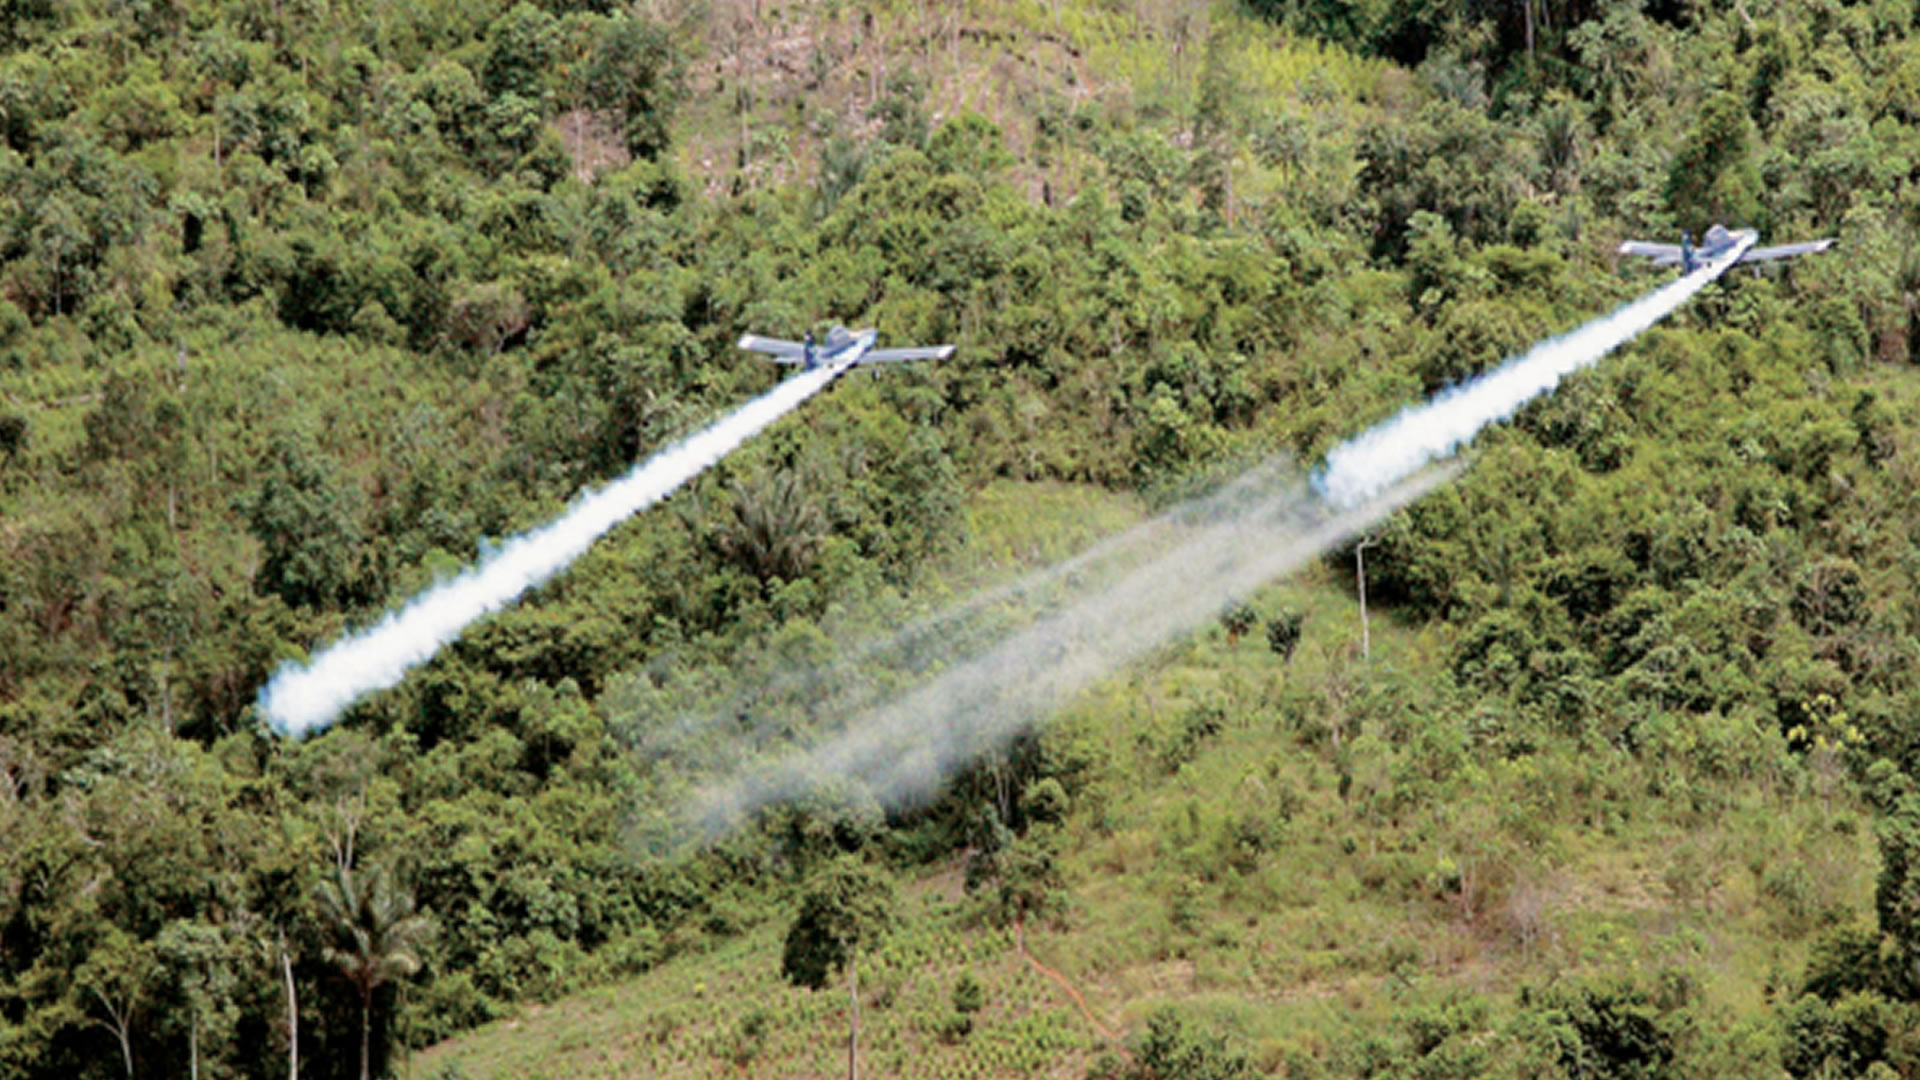 Fumigación de cultivos ílicitos en Colombia. Imagen de referencia.